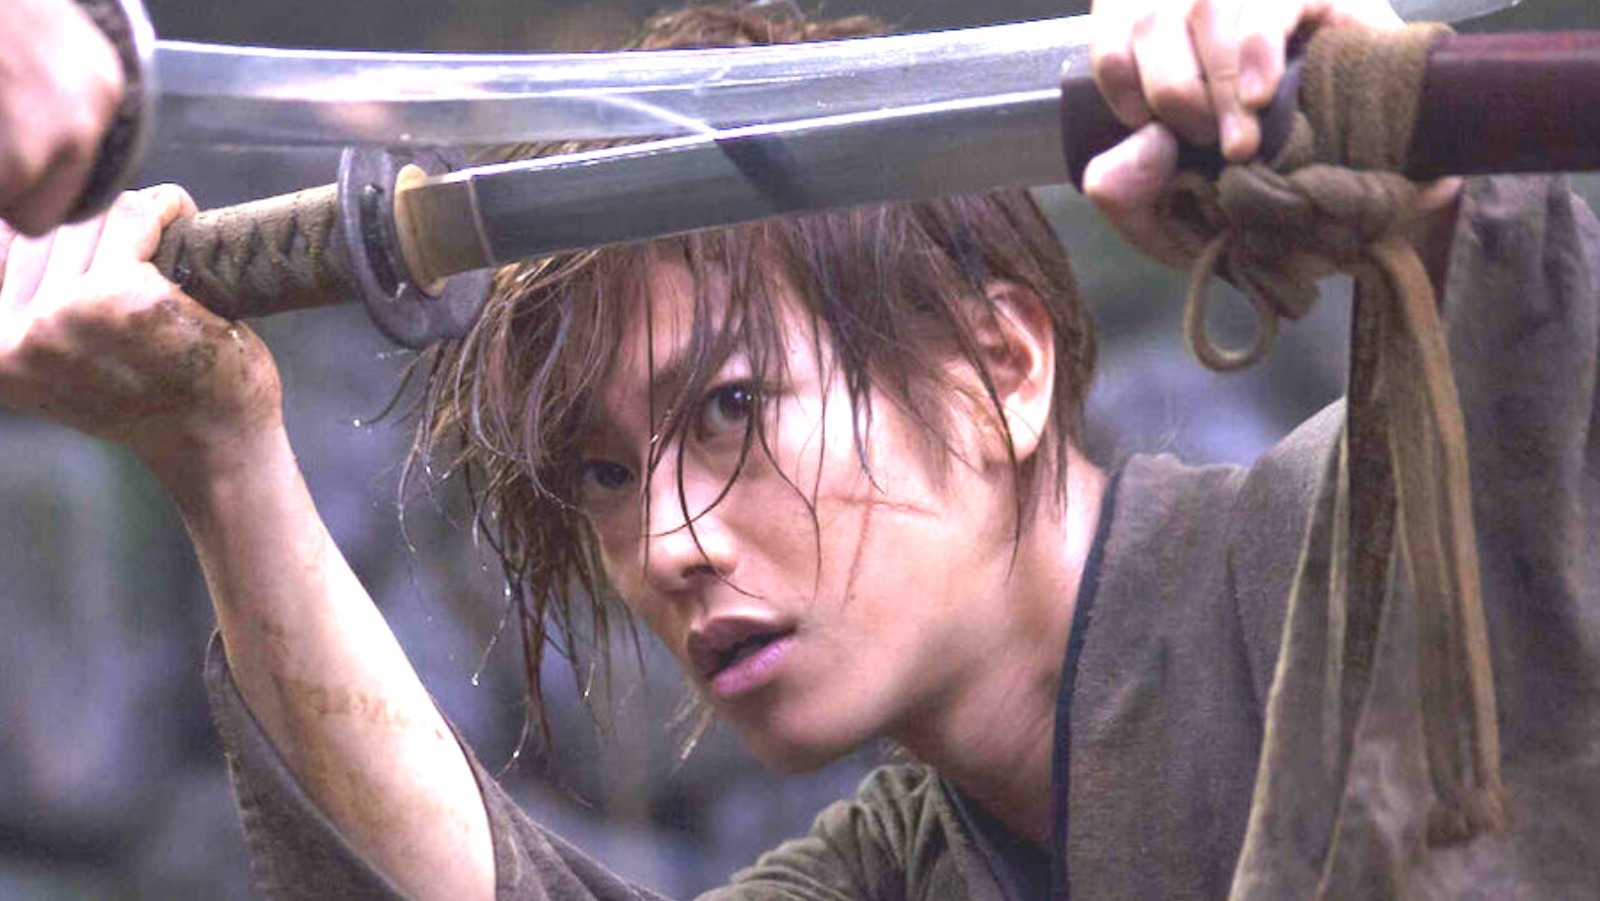 Rurouni Kenshin: The Final streaming: watch online